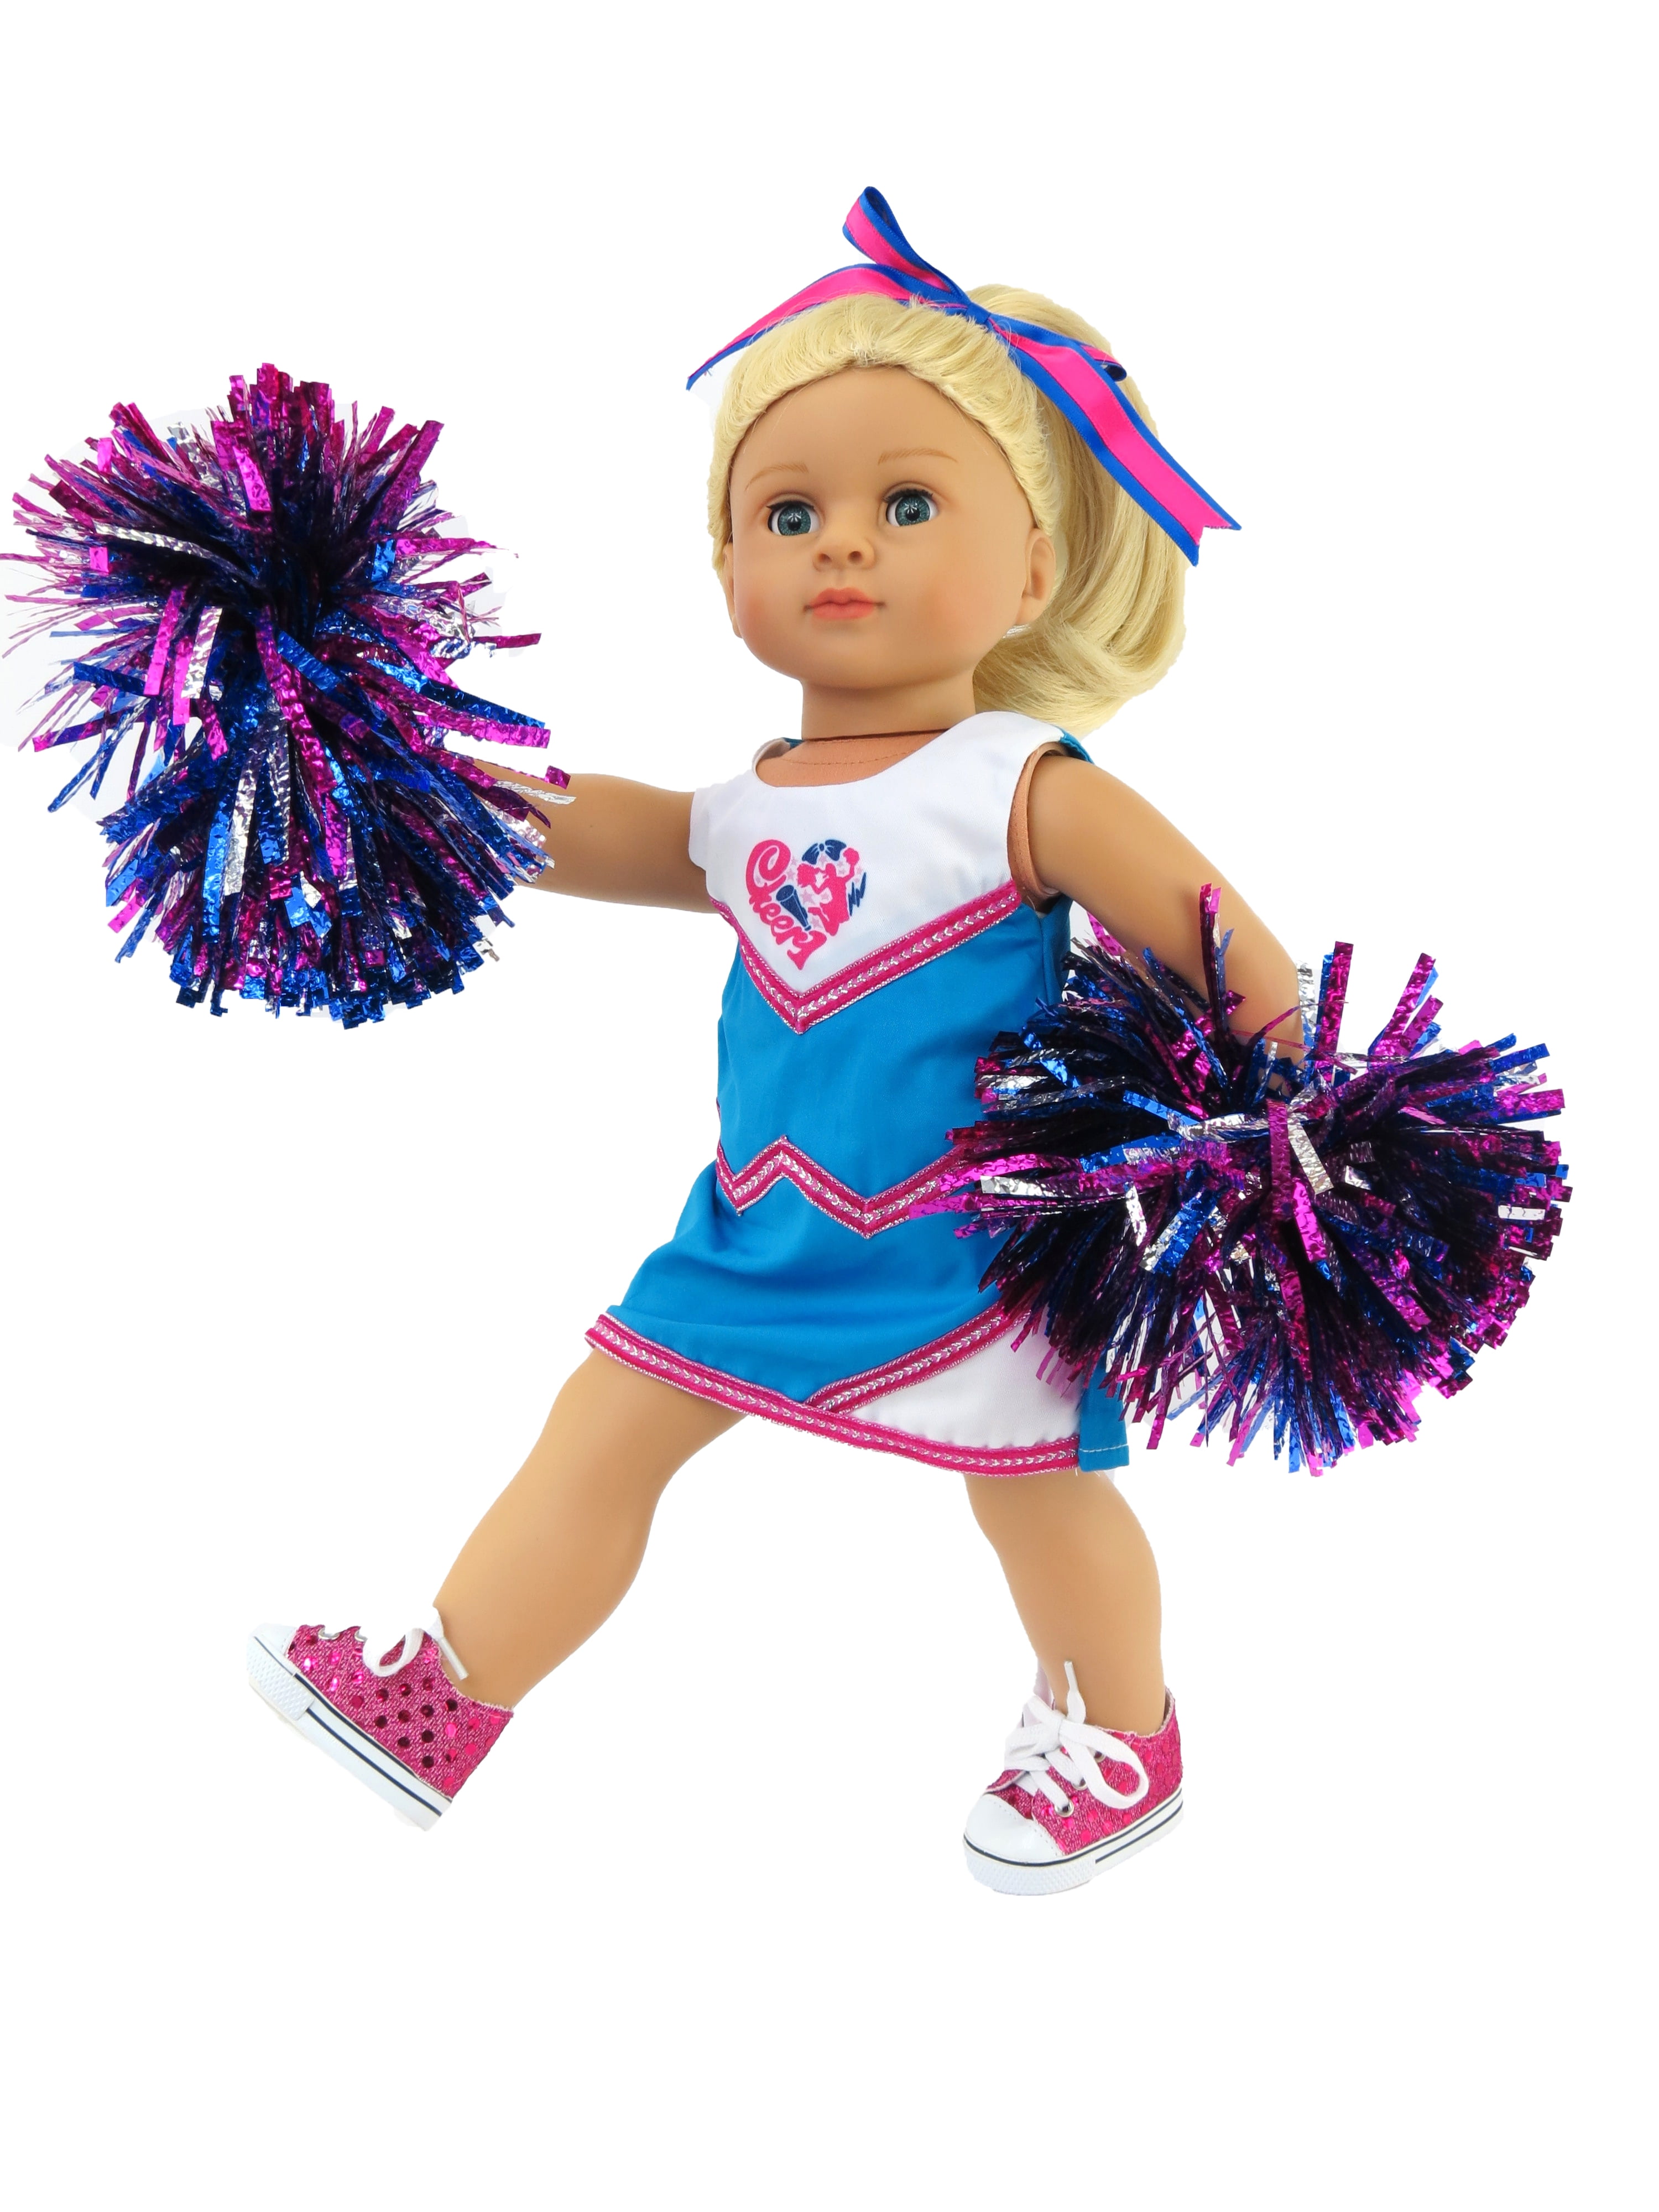 Regenerativ Anden klasse global Blue and Pink Cheerleader with Pom Poms - Walmart.com